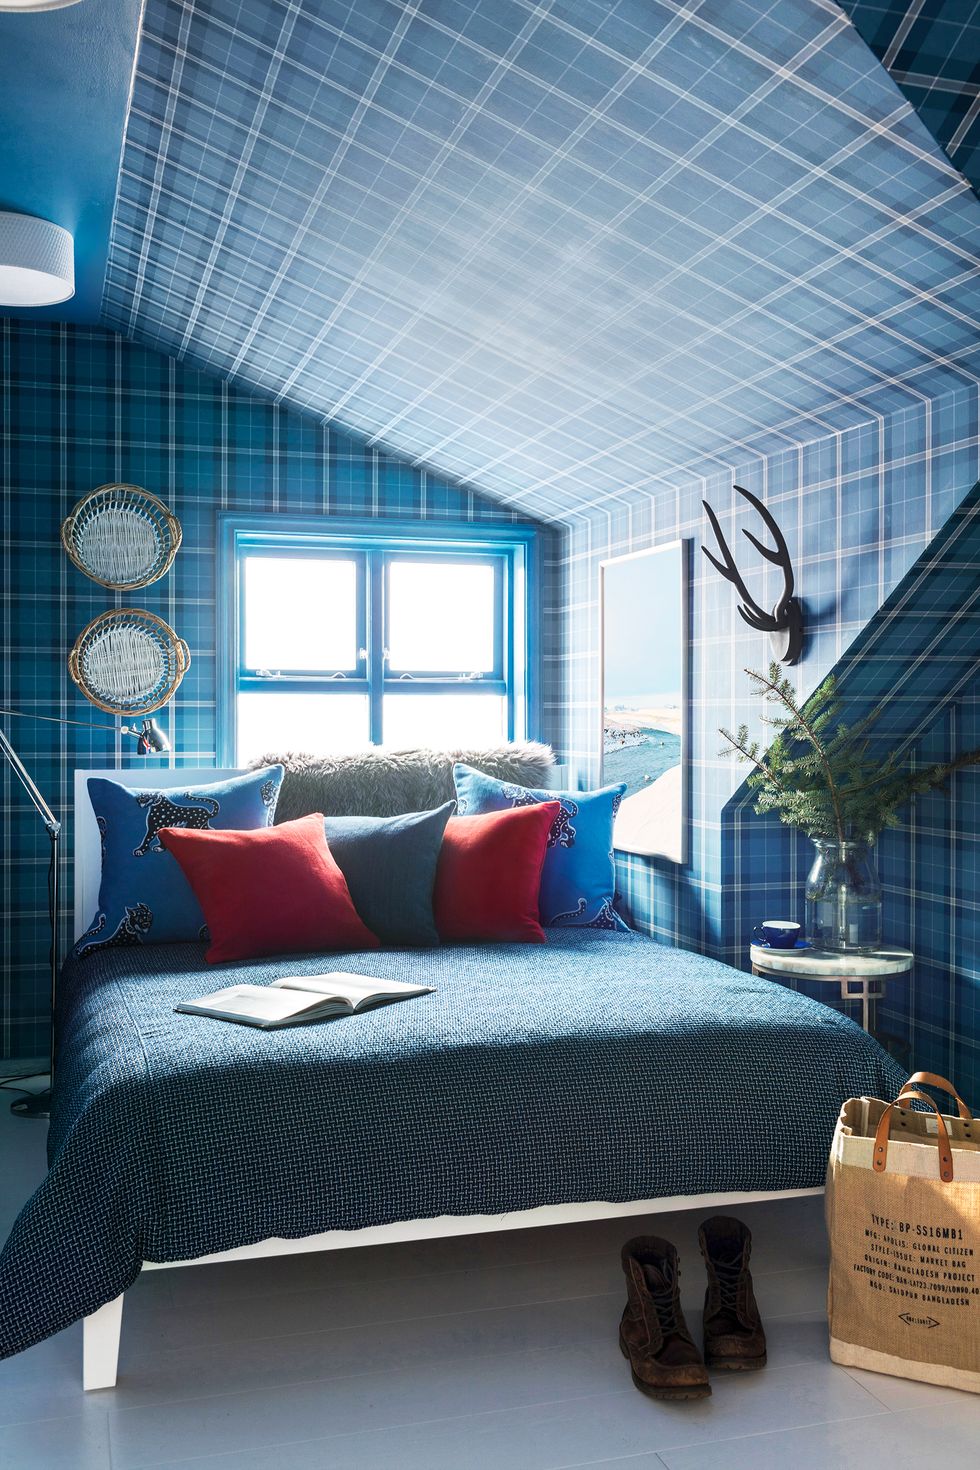 phòng ngủ nhỏ xíu này thành một thế giới rộng lớn với giấy dán tường phong phú, trang trí tường theo chiều và đồ nội thất cân đối hoàn hảo. Màu đỏ tạo thêm bất ngờ thú vị và khuyến khích chúng ta kết hợp các màu cơ bản.